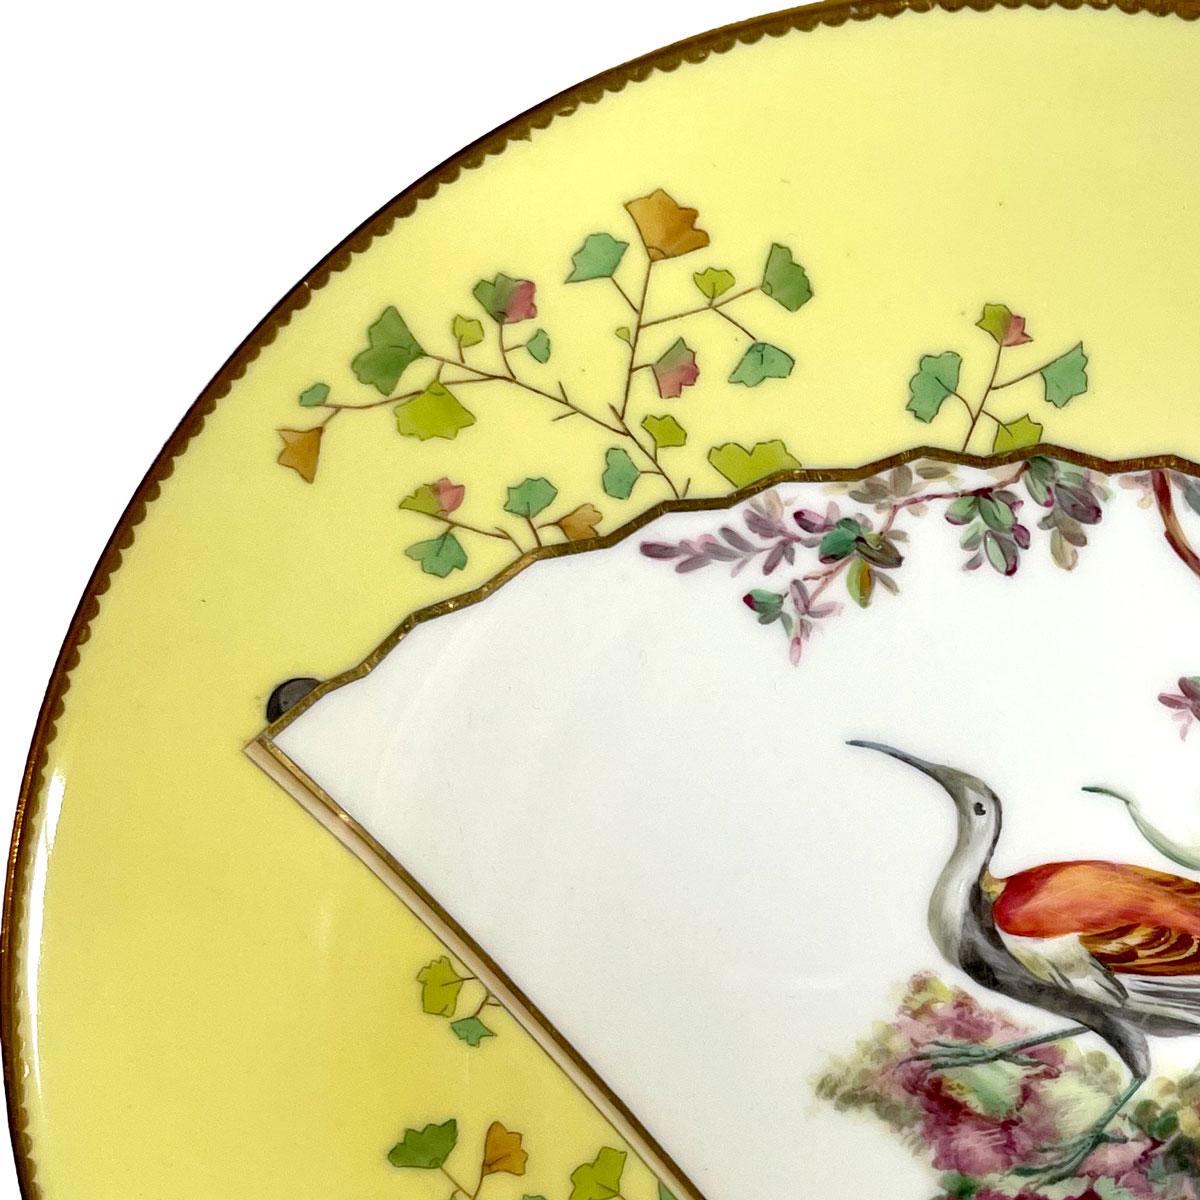 Gelber ästhetischer Minton-Porzellanteller im Stil des Japonismus, hergestellt von Christopher Dresser. Runder Teller, verziert mit einem orientalischen Fächer, der einen schönen und bunten Vogel darstellt. Hübsche Dekoration mit Pflanzen und